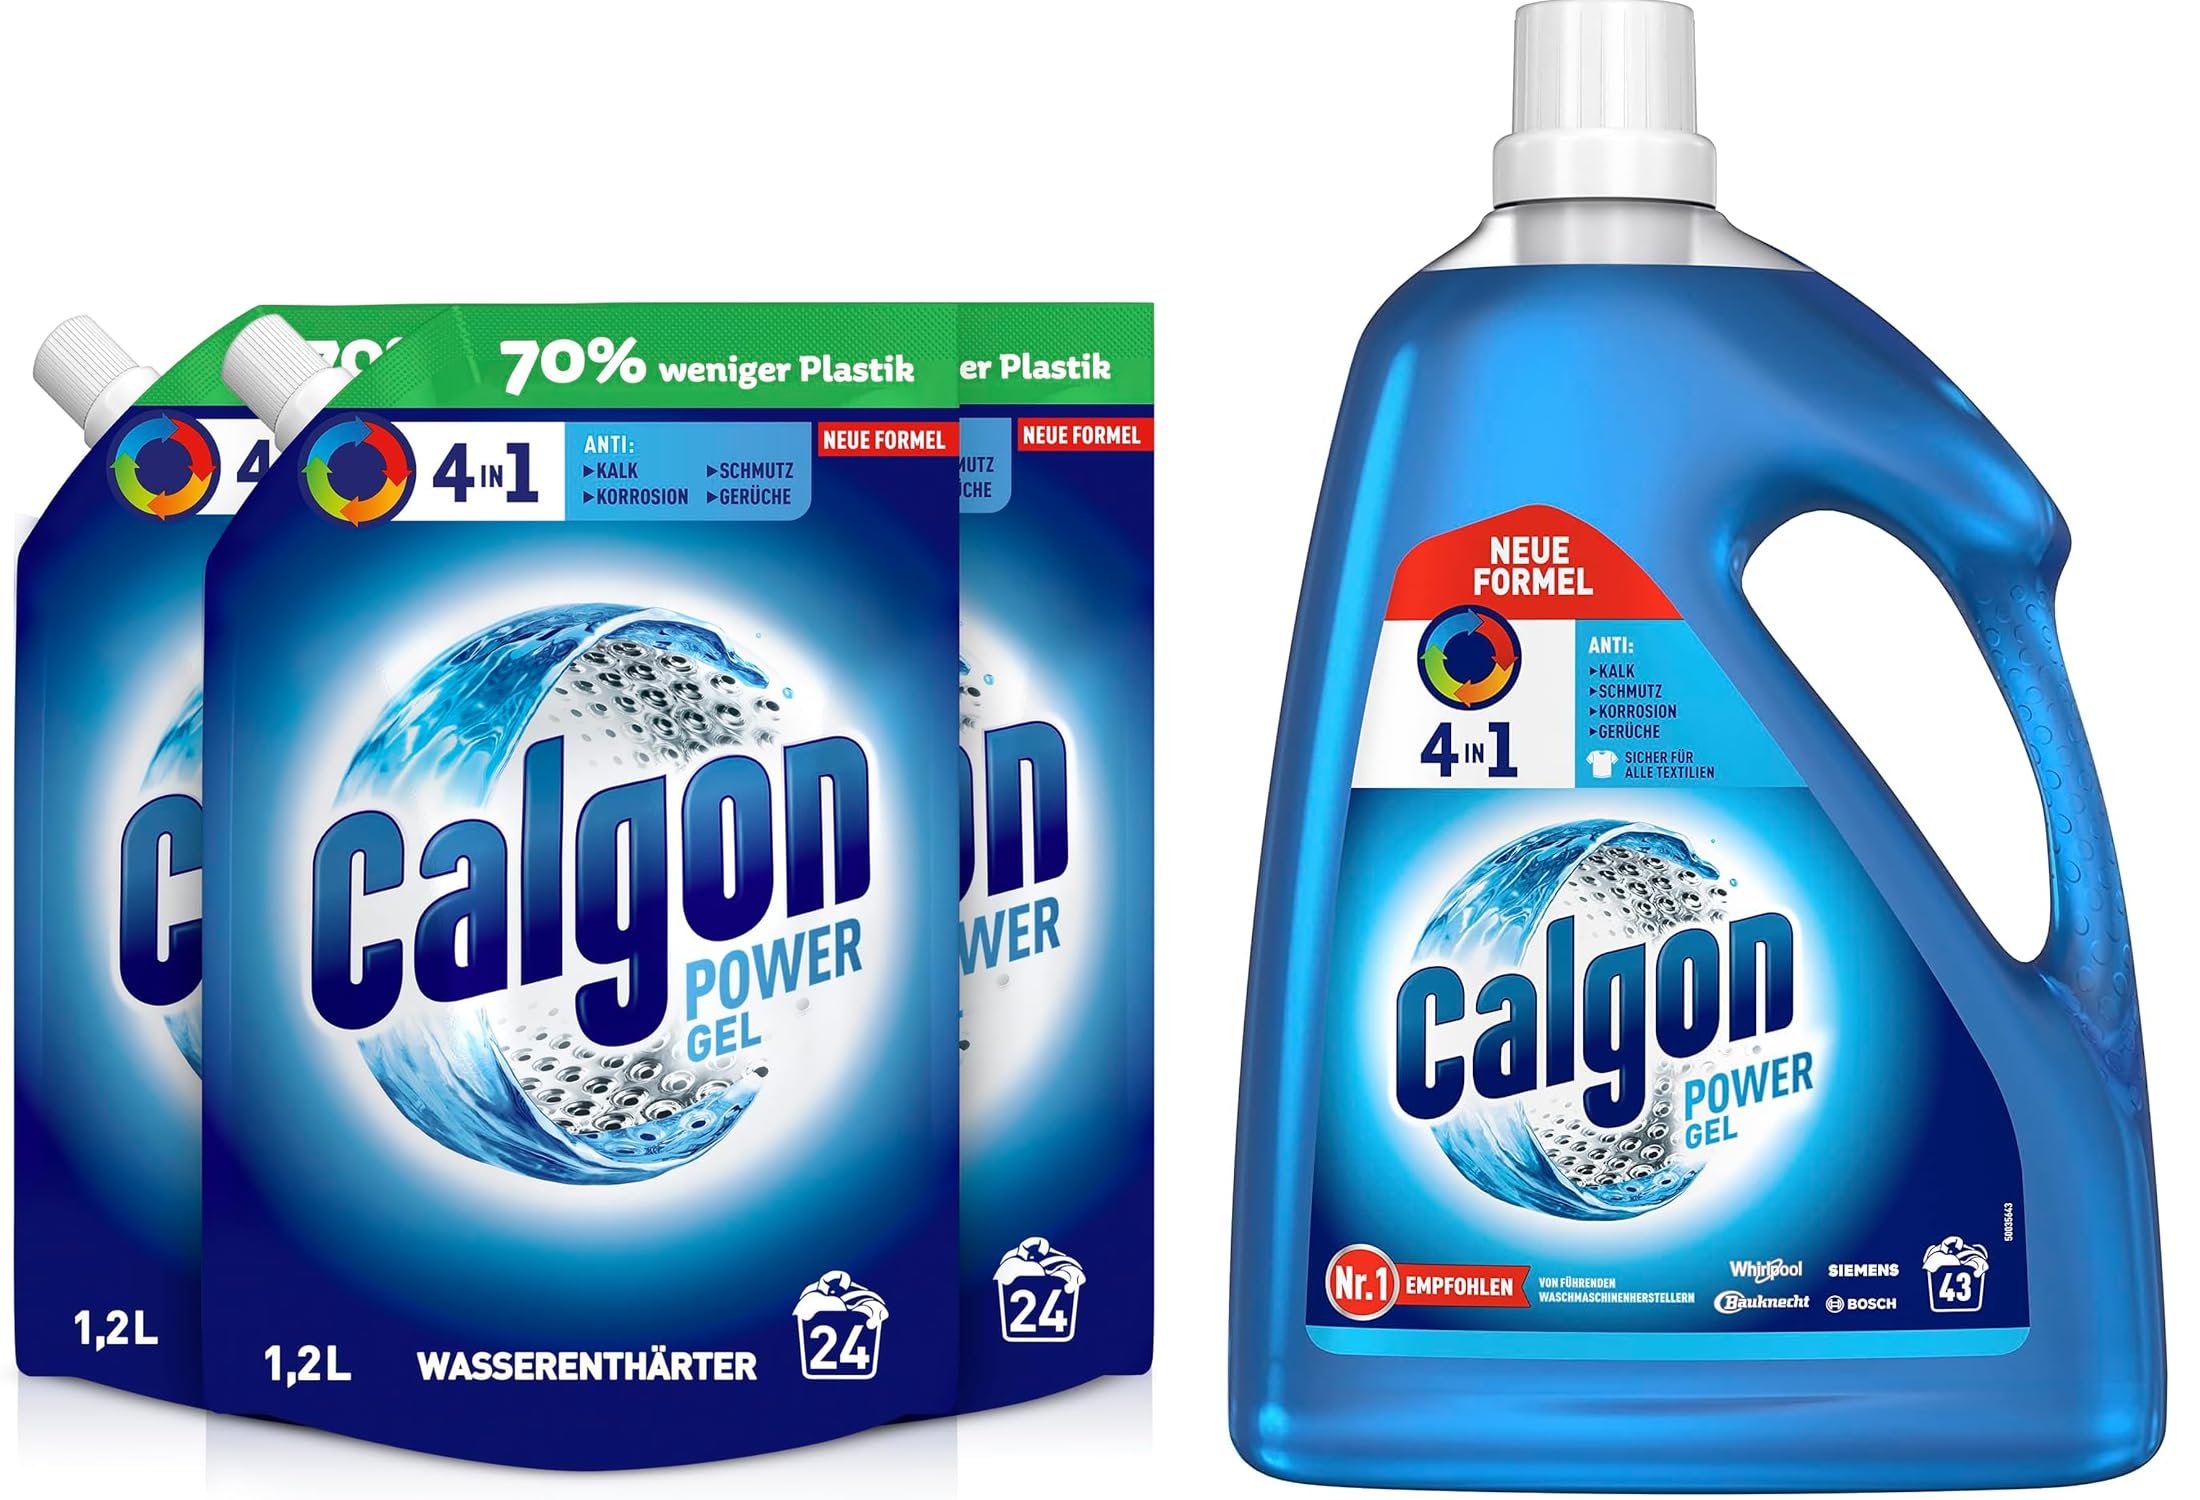 Calgon 4-in-1 Power Gel - Wirksam gegen Kalk, Schmutz, Gerüche und Korrosion – Schützender Wasserenthärter für die Waschmaschine 2,15 L + Calgon Gel 3 x 1,2L Nachfüller